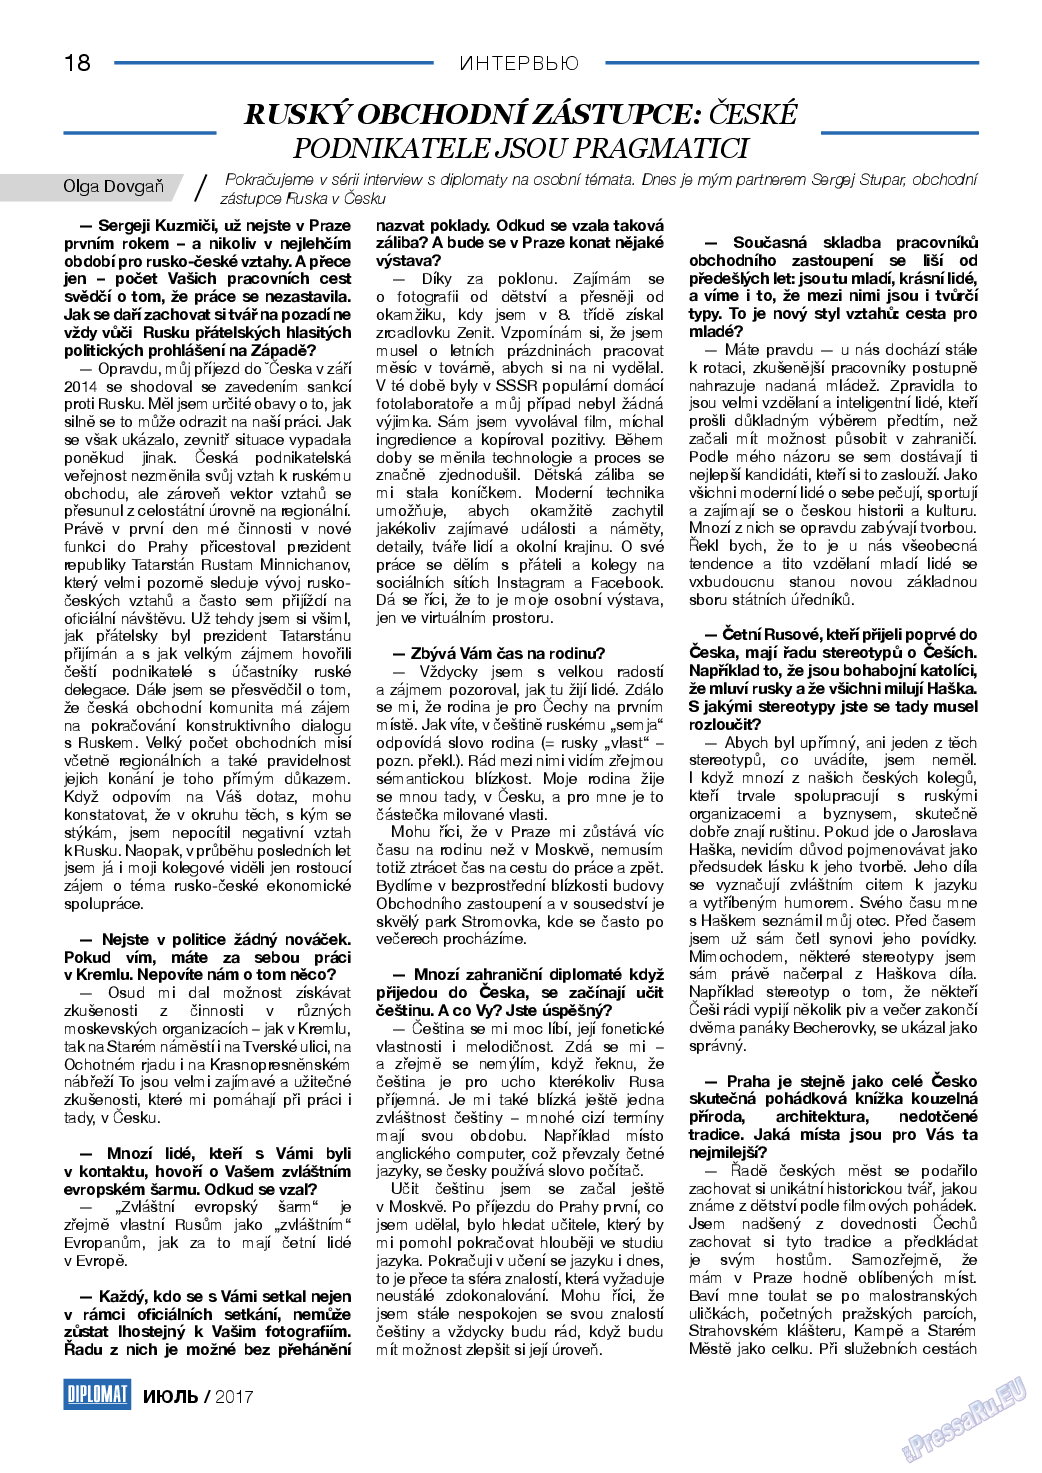 Diplomat, газета. 2017 №94 стр.18